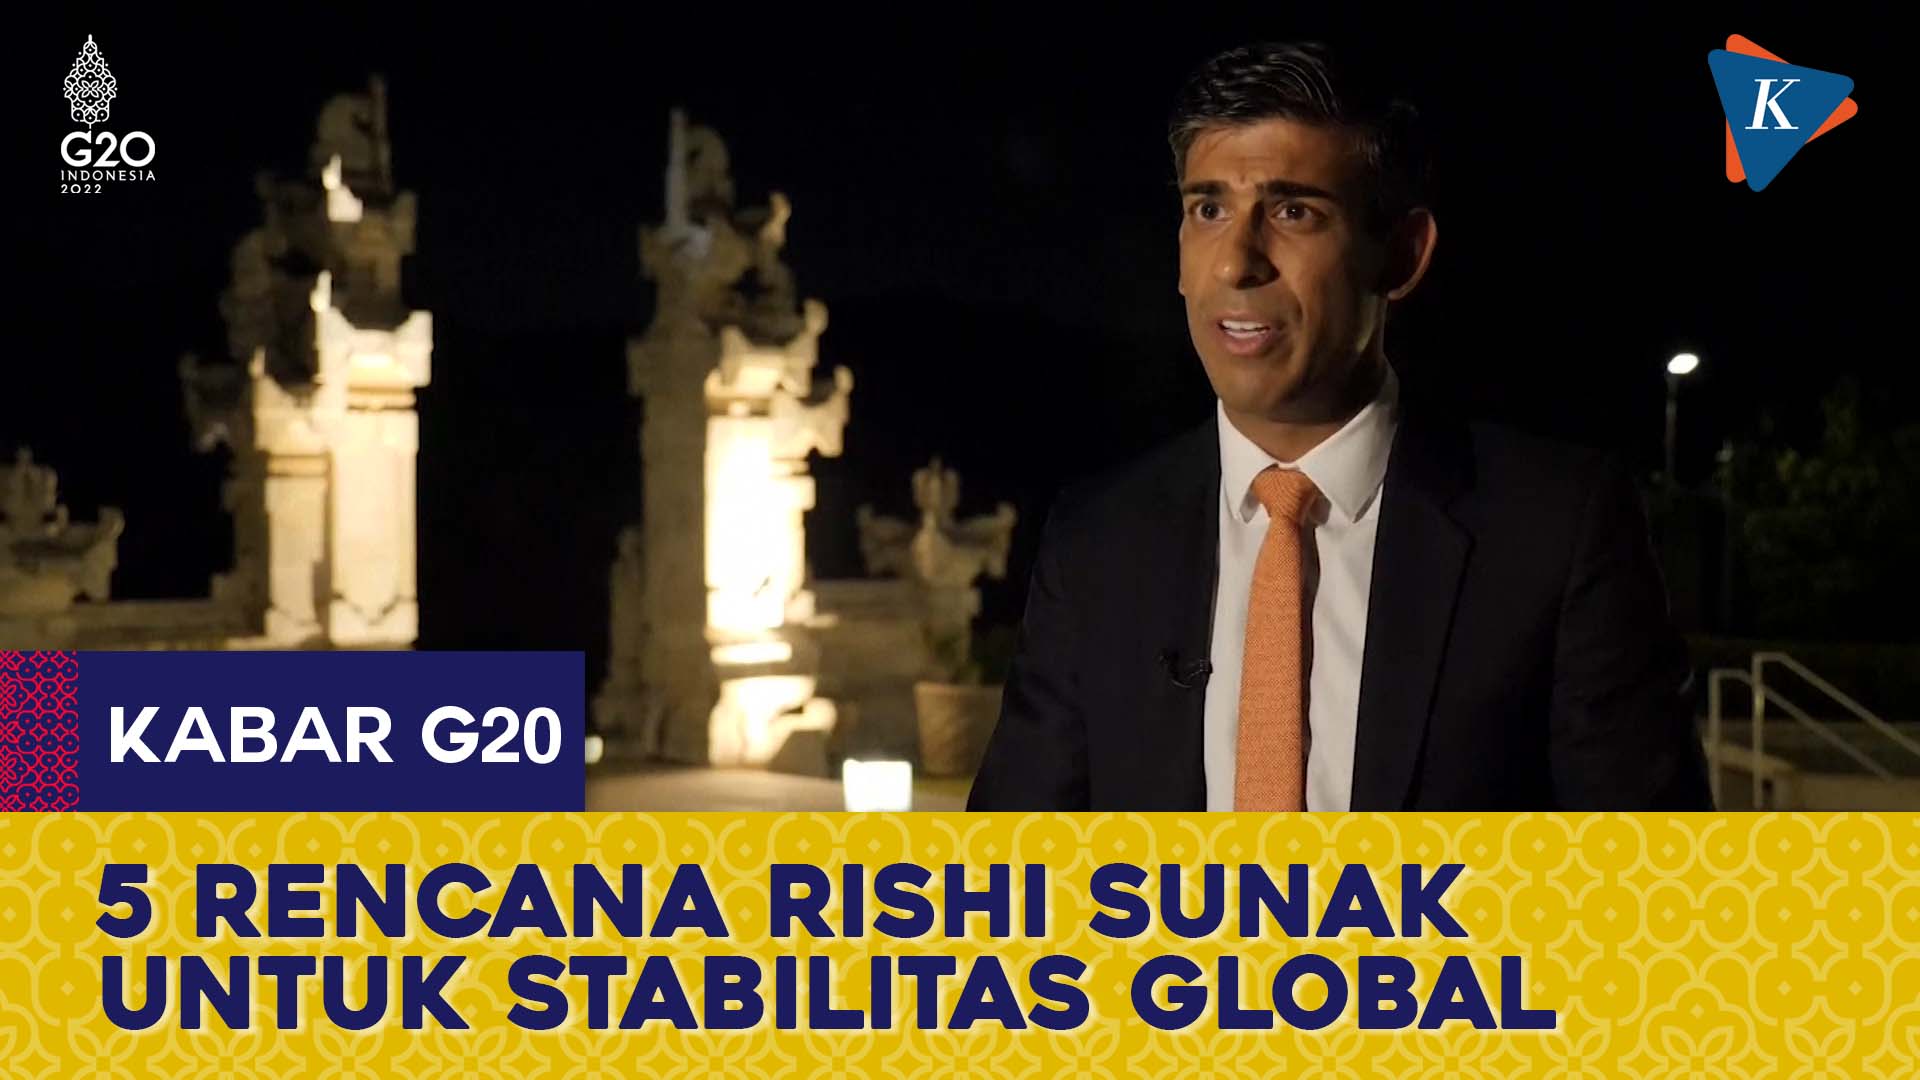 Tiba di Bali, PM Inggris Rishi Sunak Bawa 5 Rencana untuk Stabilitas Global di KTT G20